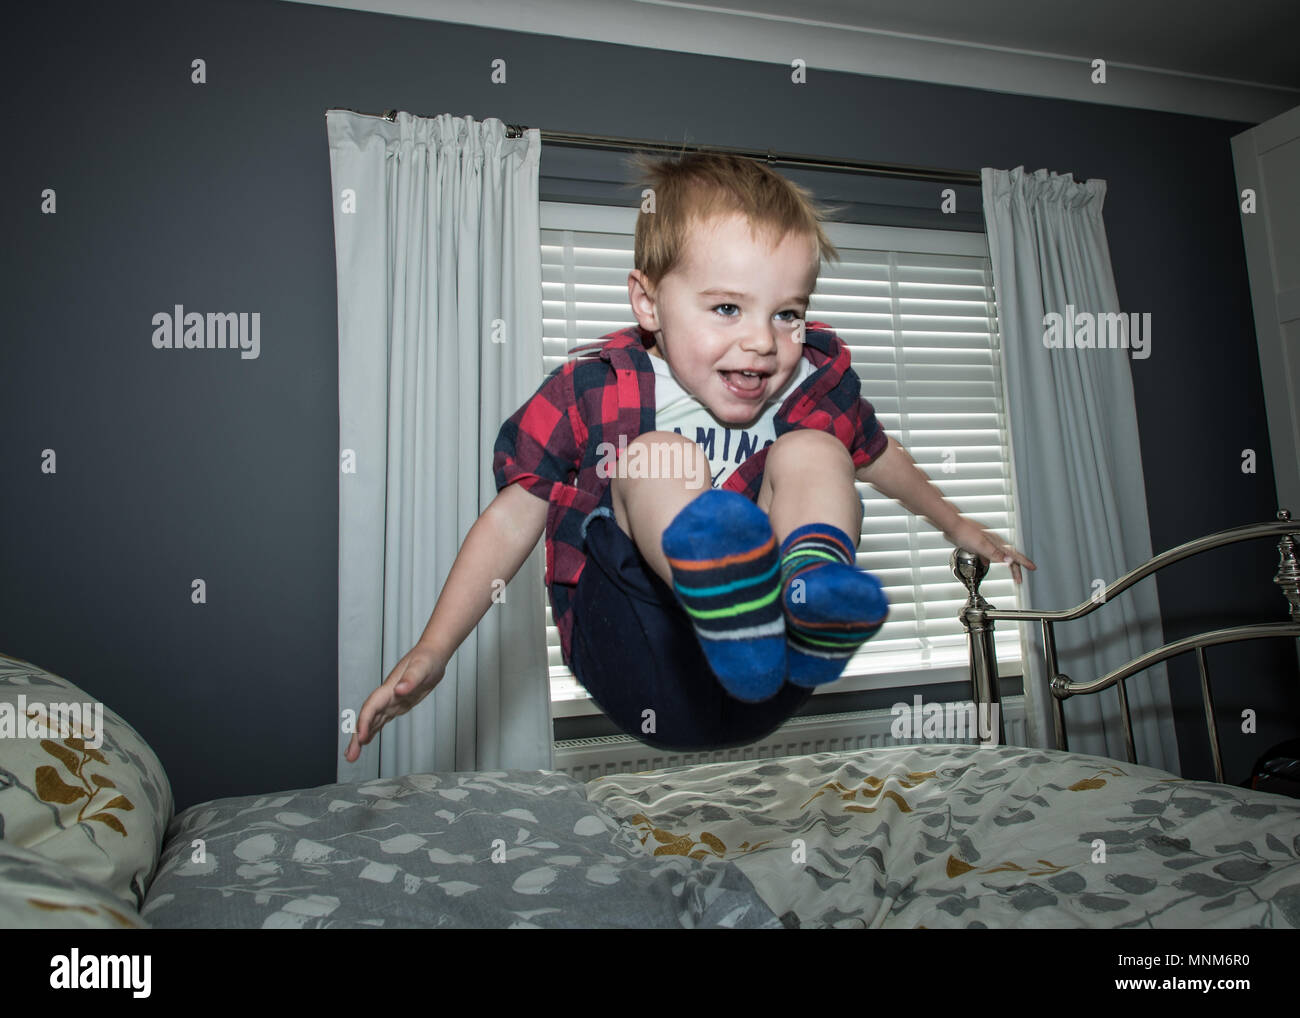 Un ragazzino salta su un letto in una camera da letto / Bambino saltando sul letto Foto Stock